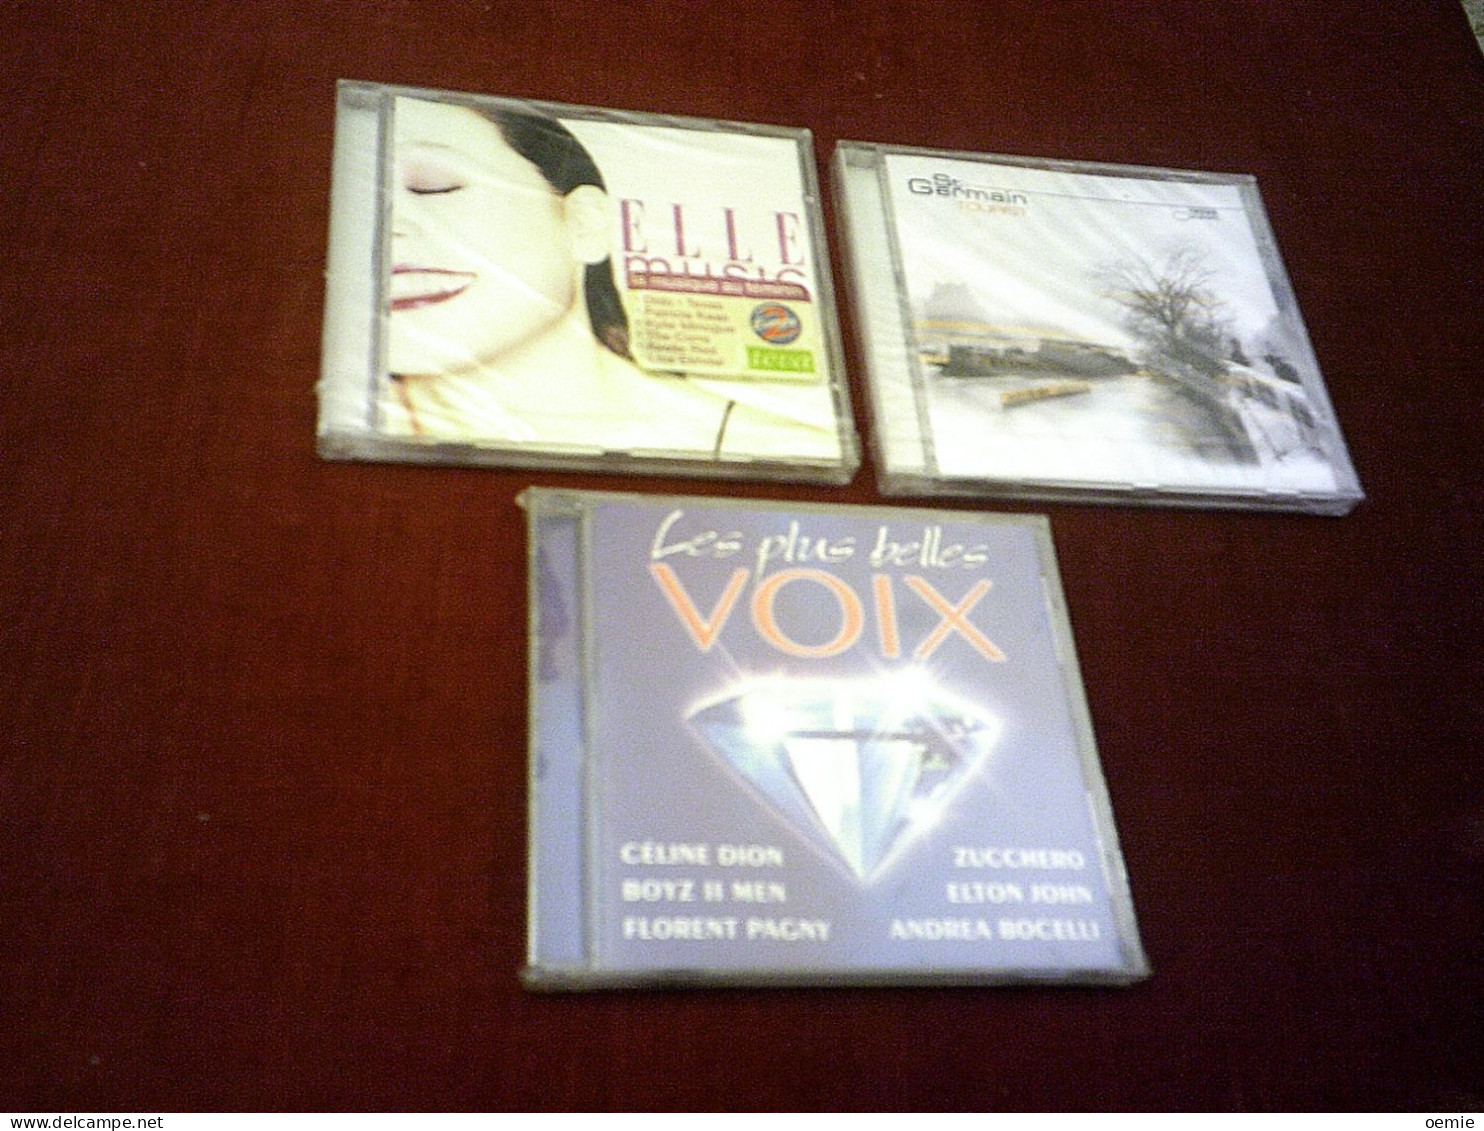 COLLECTION DE  3CD ALBUM DE VARIOUS ARTISTES ° ELLE MUSIC  + ST GERMAIN TOURIST + LES PLUS BELLES VOIX - Compilaties